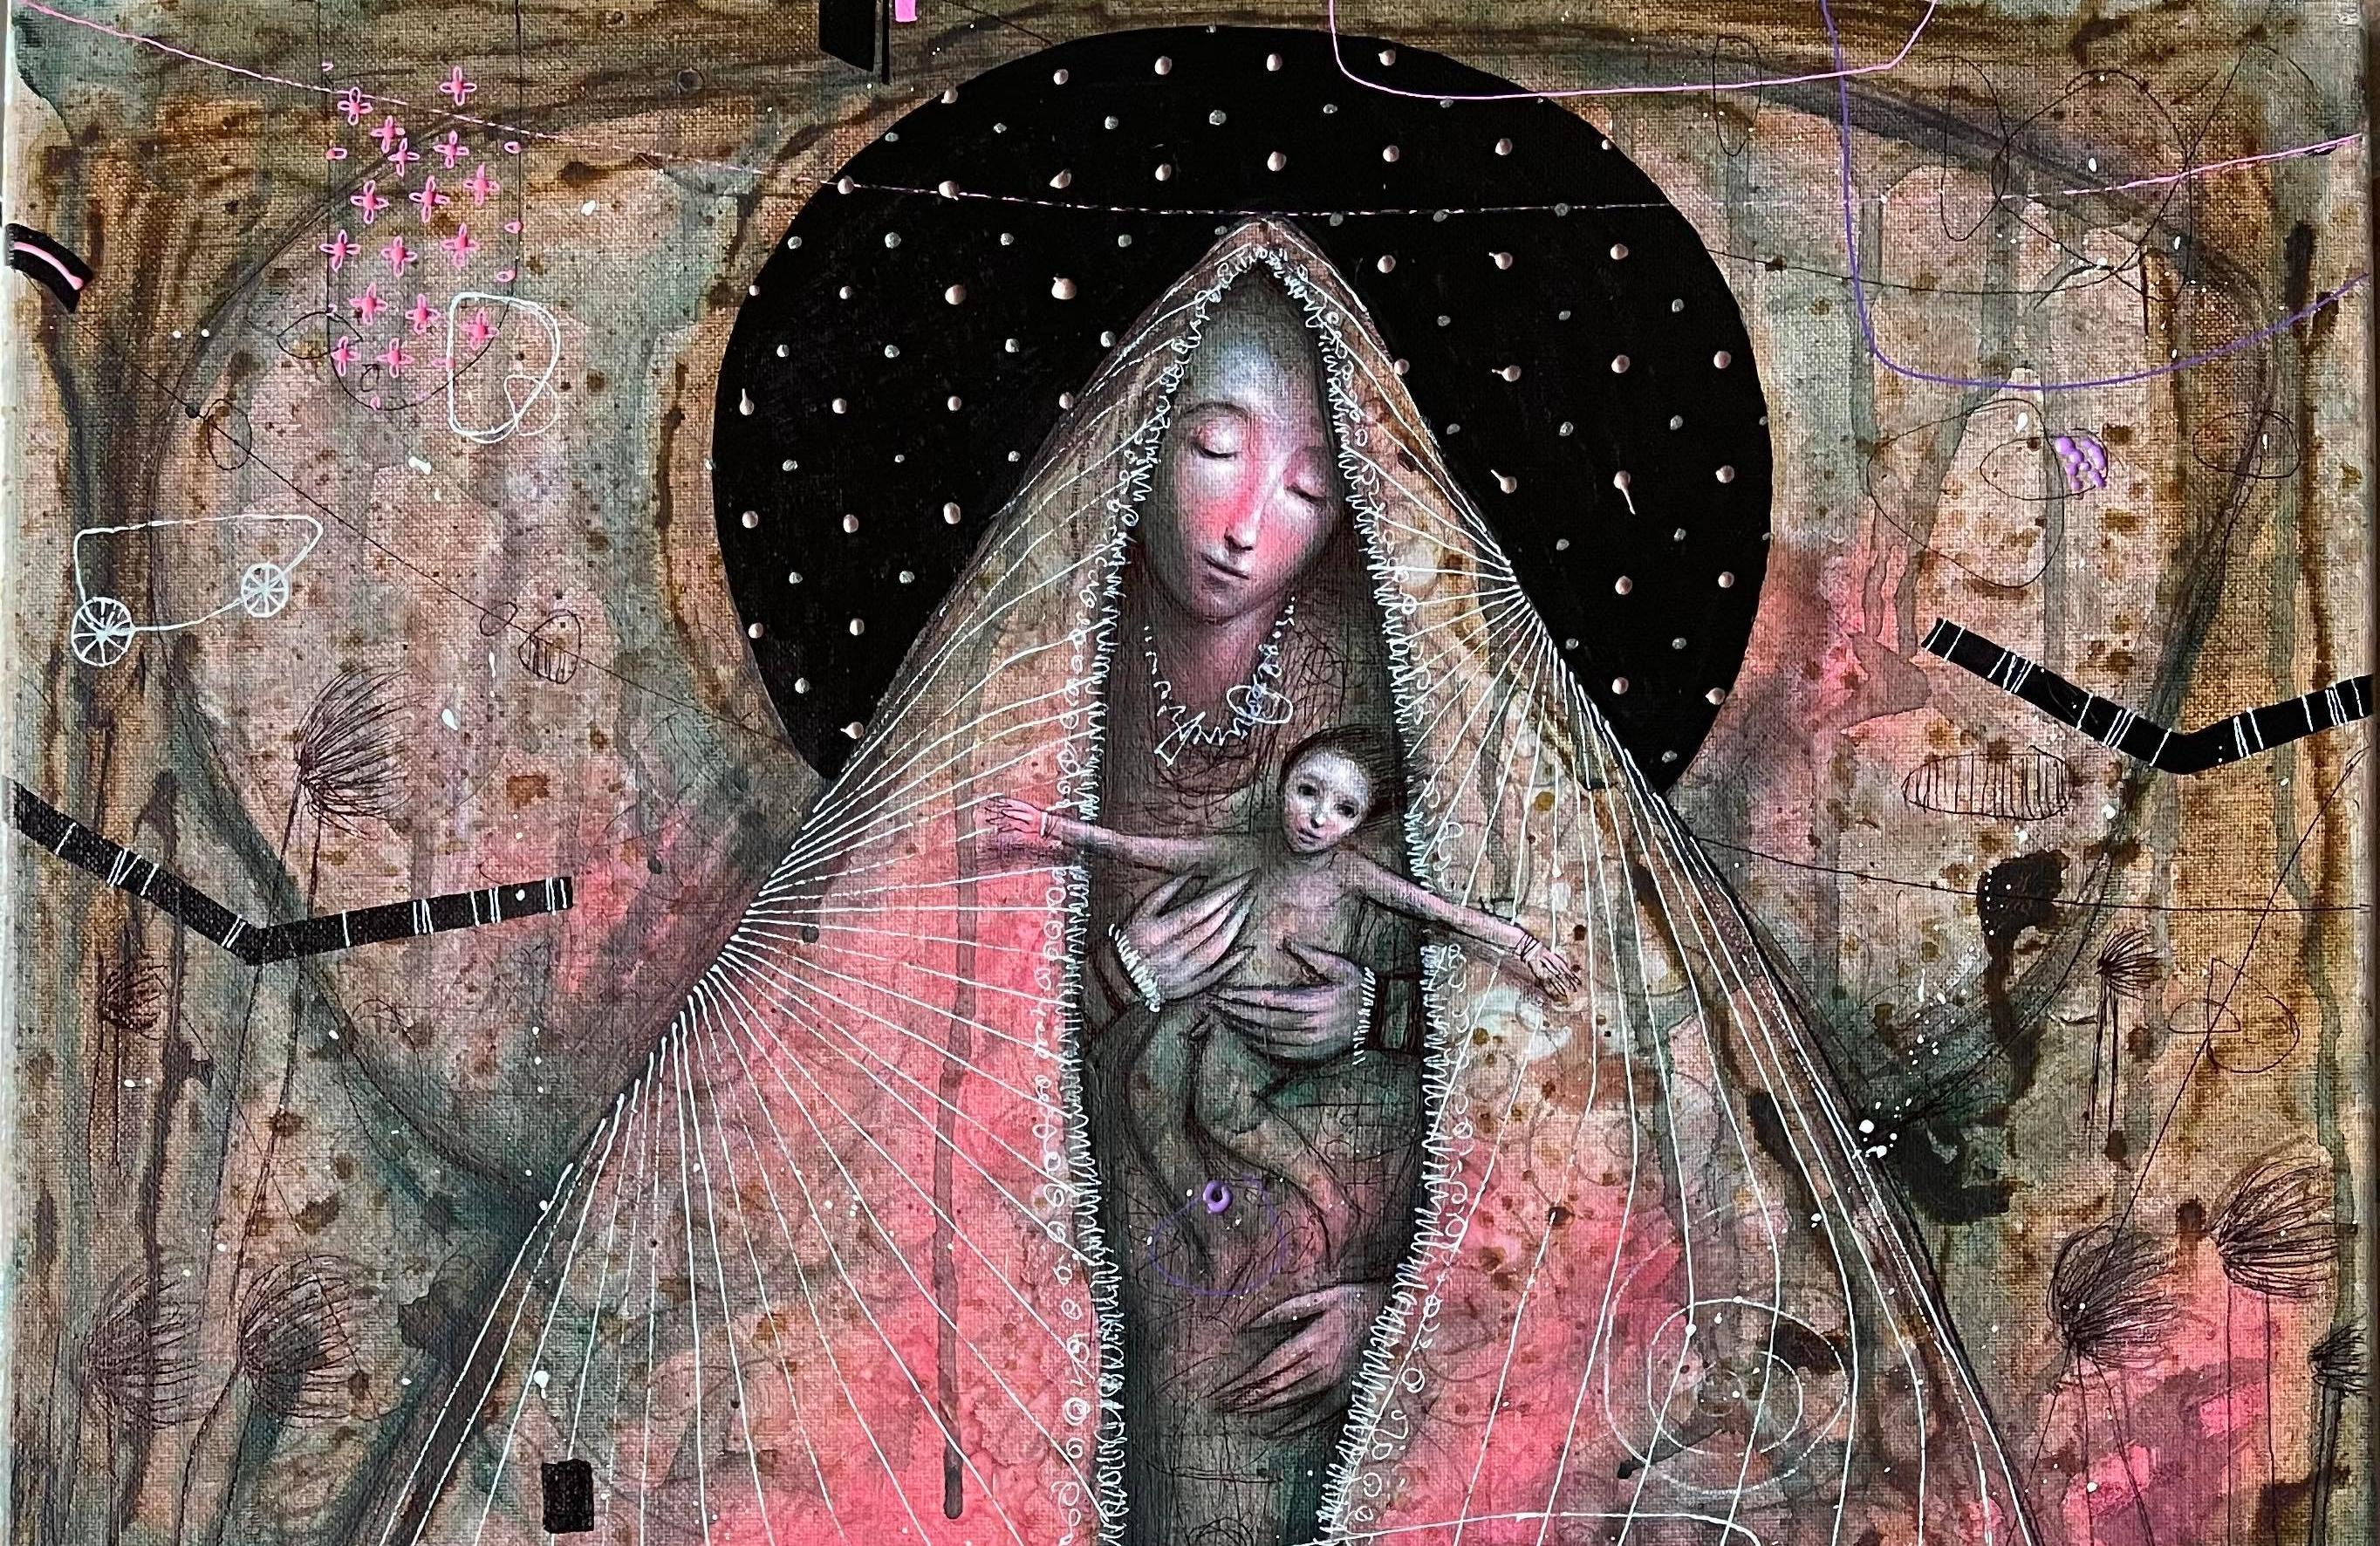 The Virgen & die mechanische Creed, Öl, Mixed Media, Hyperrealismus,  Kubanische Kunst,  (Surrealismus), Mixed Media Art, von Brian Sanchez